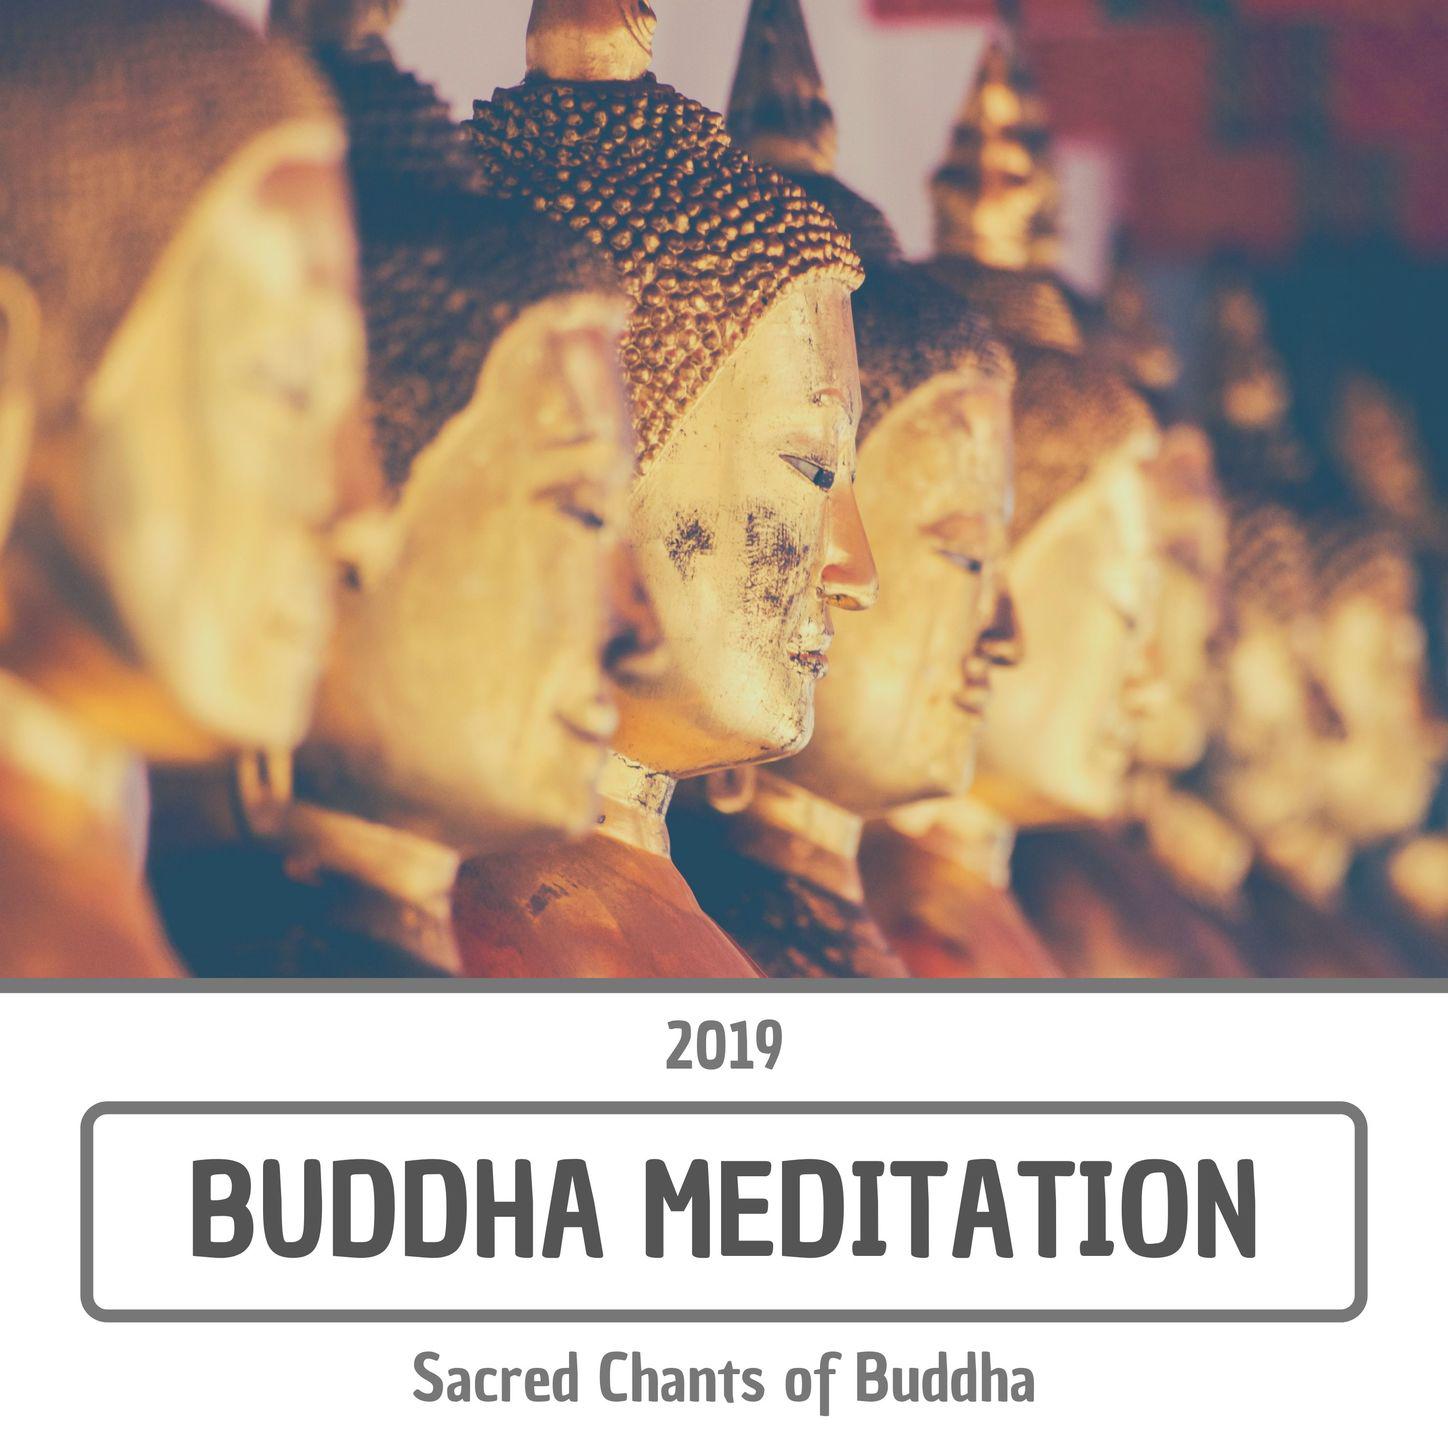 Buddha Meditation 2019 - Sacred Chants of Buddha